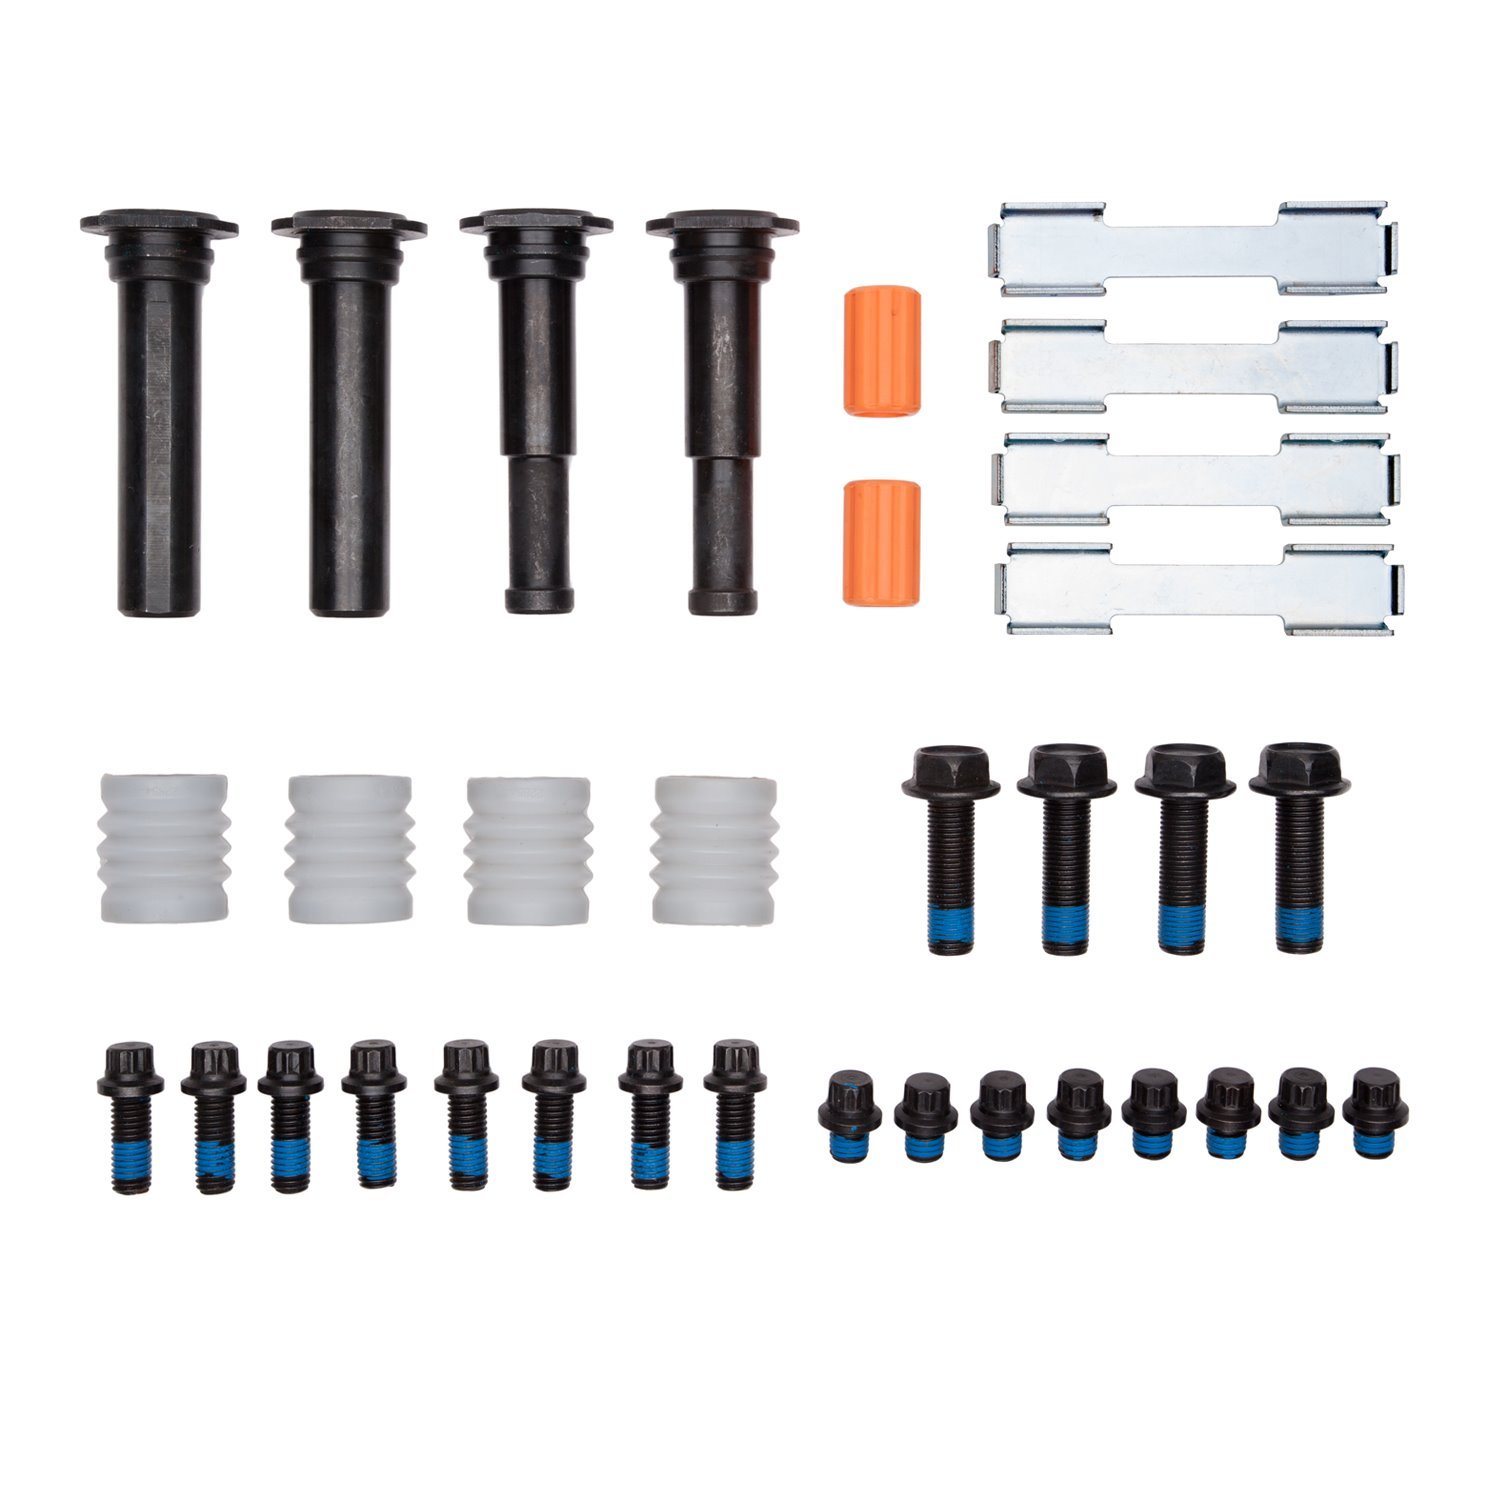 340-54074 Disc Brake Hardware Kit, Fits Select Multiple Makes/Models, Position: Front,Fr & Rr,Fr,Rear,Rr